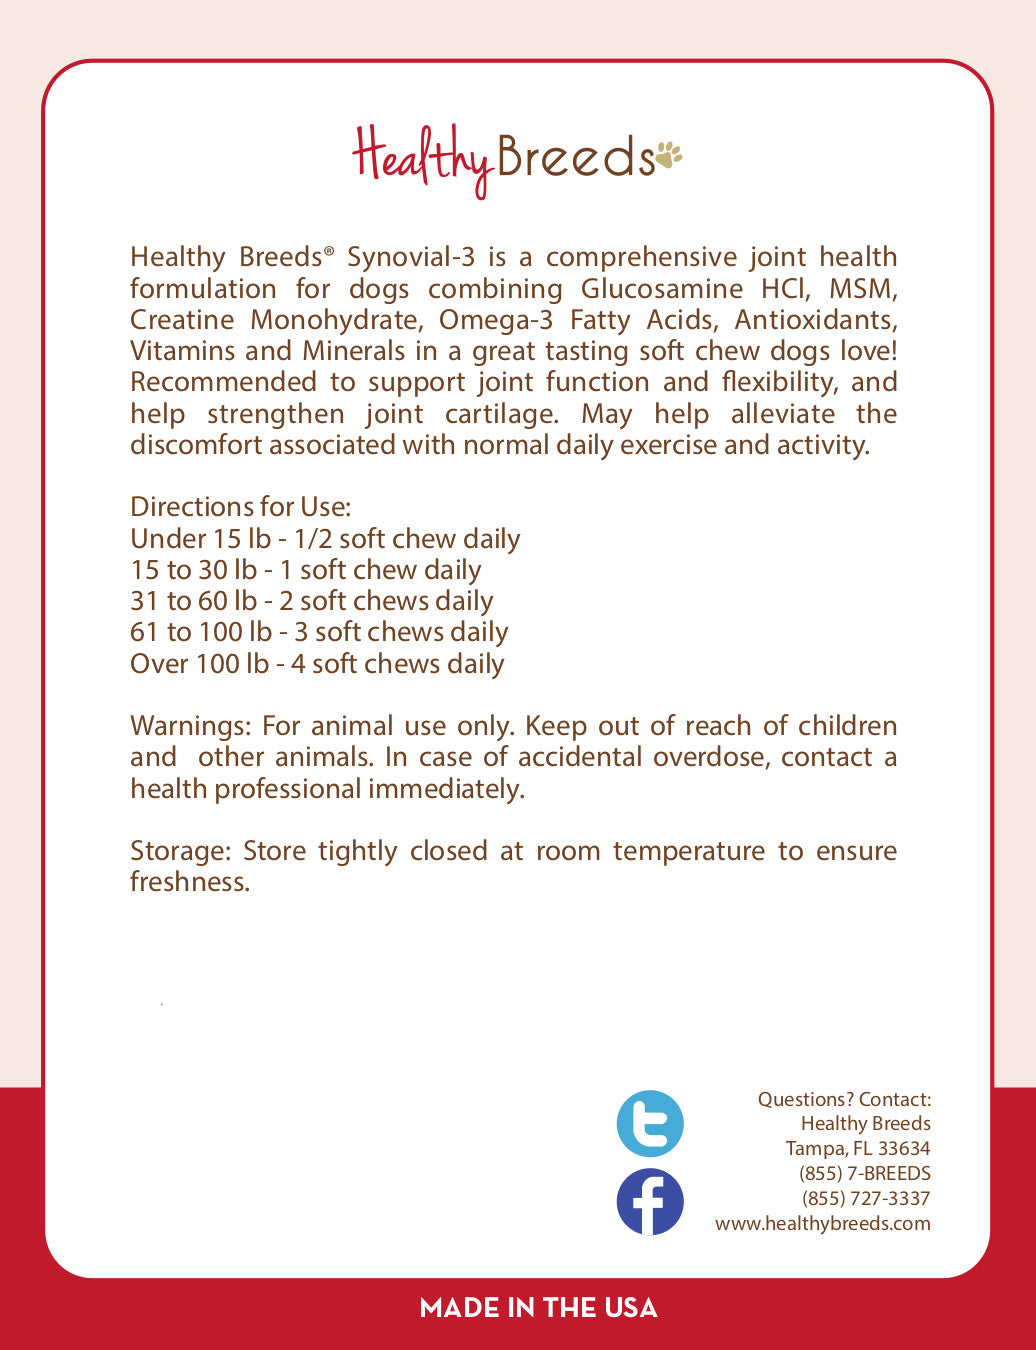 Labrador Retriever Synovial-3 Joint Health Formulation Soft Chews 240 Count